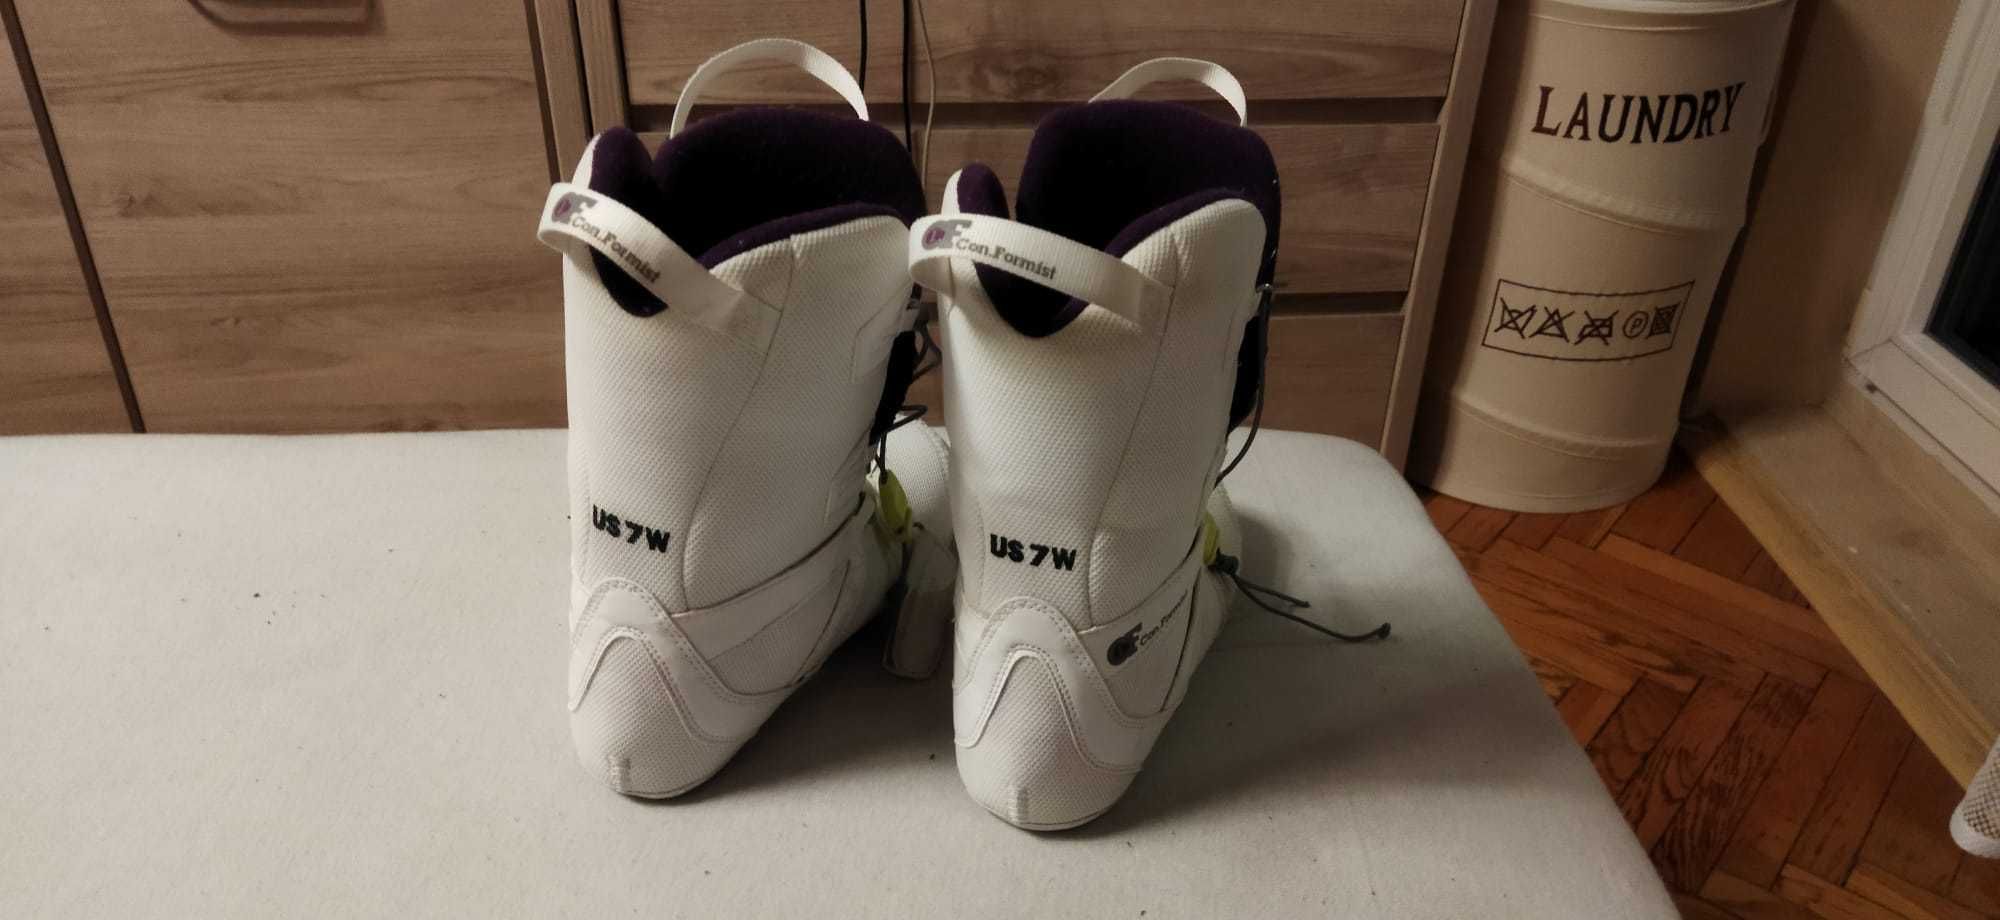 Białe buty snowboardowe Rome SDS r.37/38 (235-240mm)